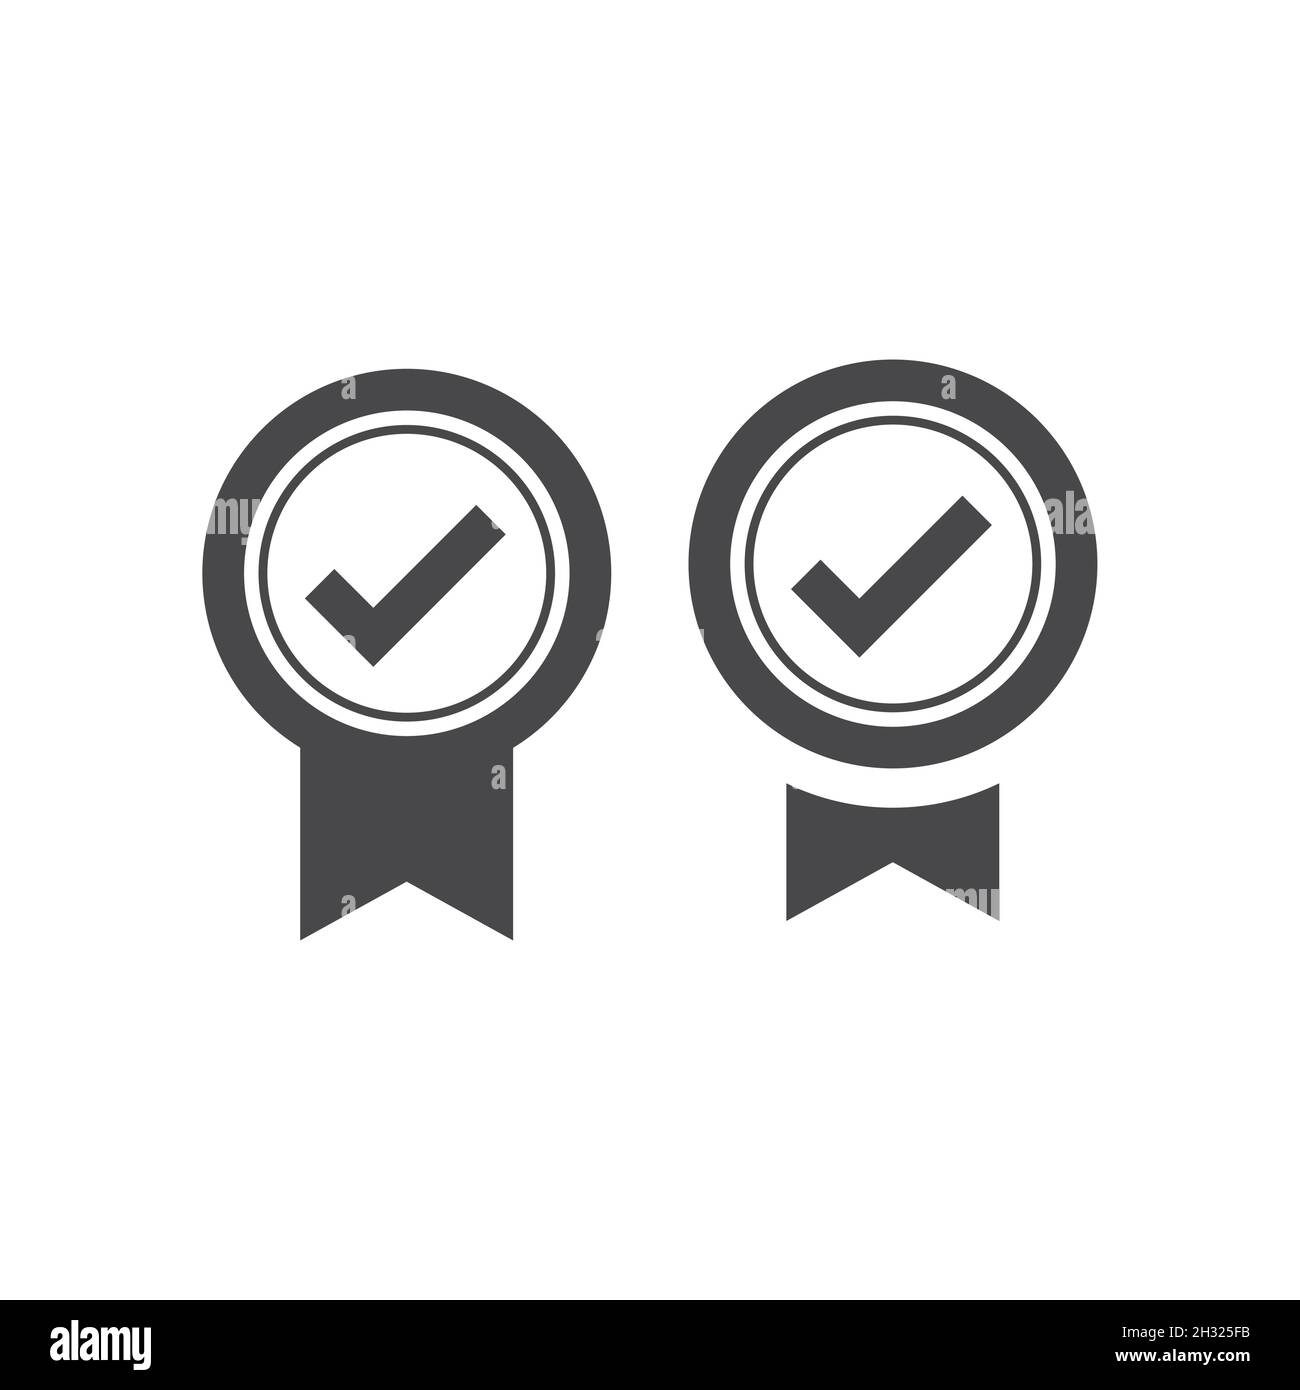 Schwarzes Vektorsymbol für Qualitätszertifikat. Prämiensymbol mit Häkchen oder Häkchen. Stock Vektor